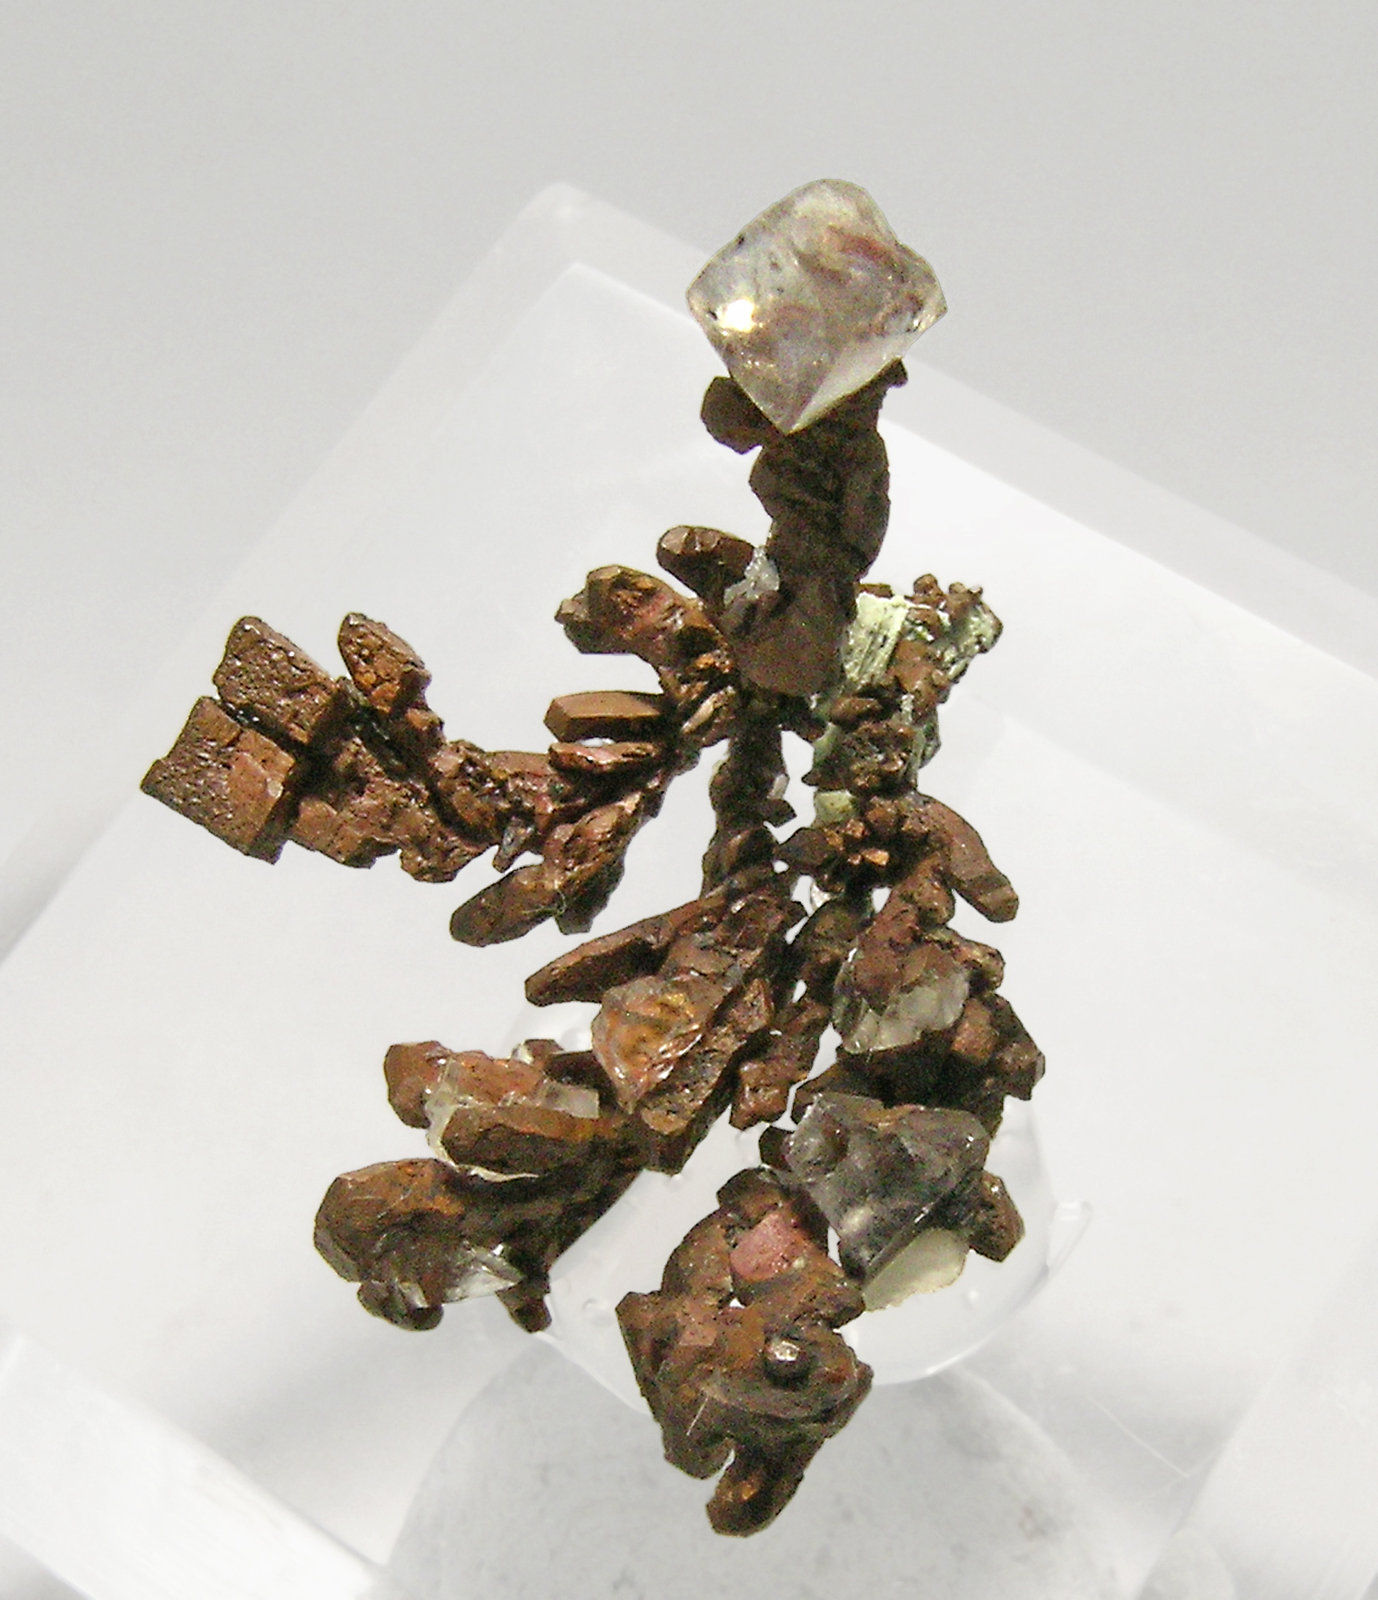 specimens/s_imagesQ3/Copper-TH26Q3.jpg